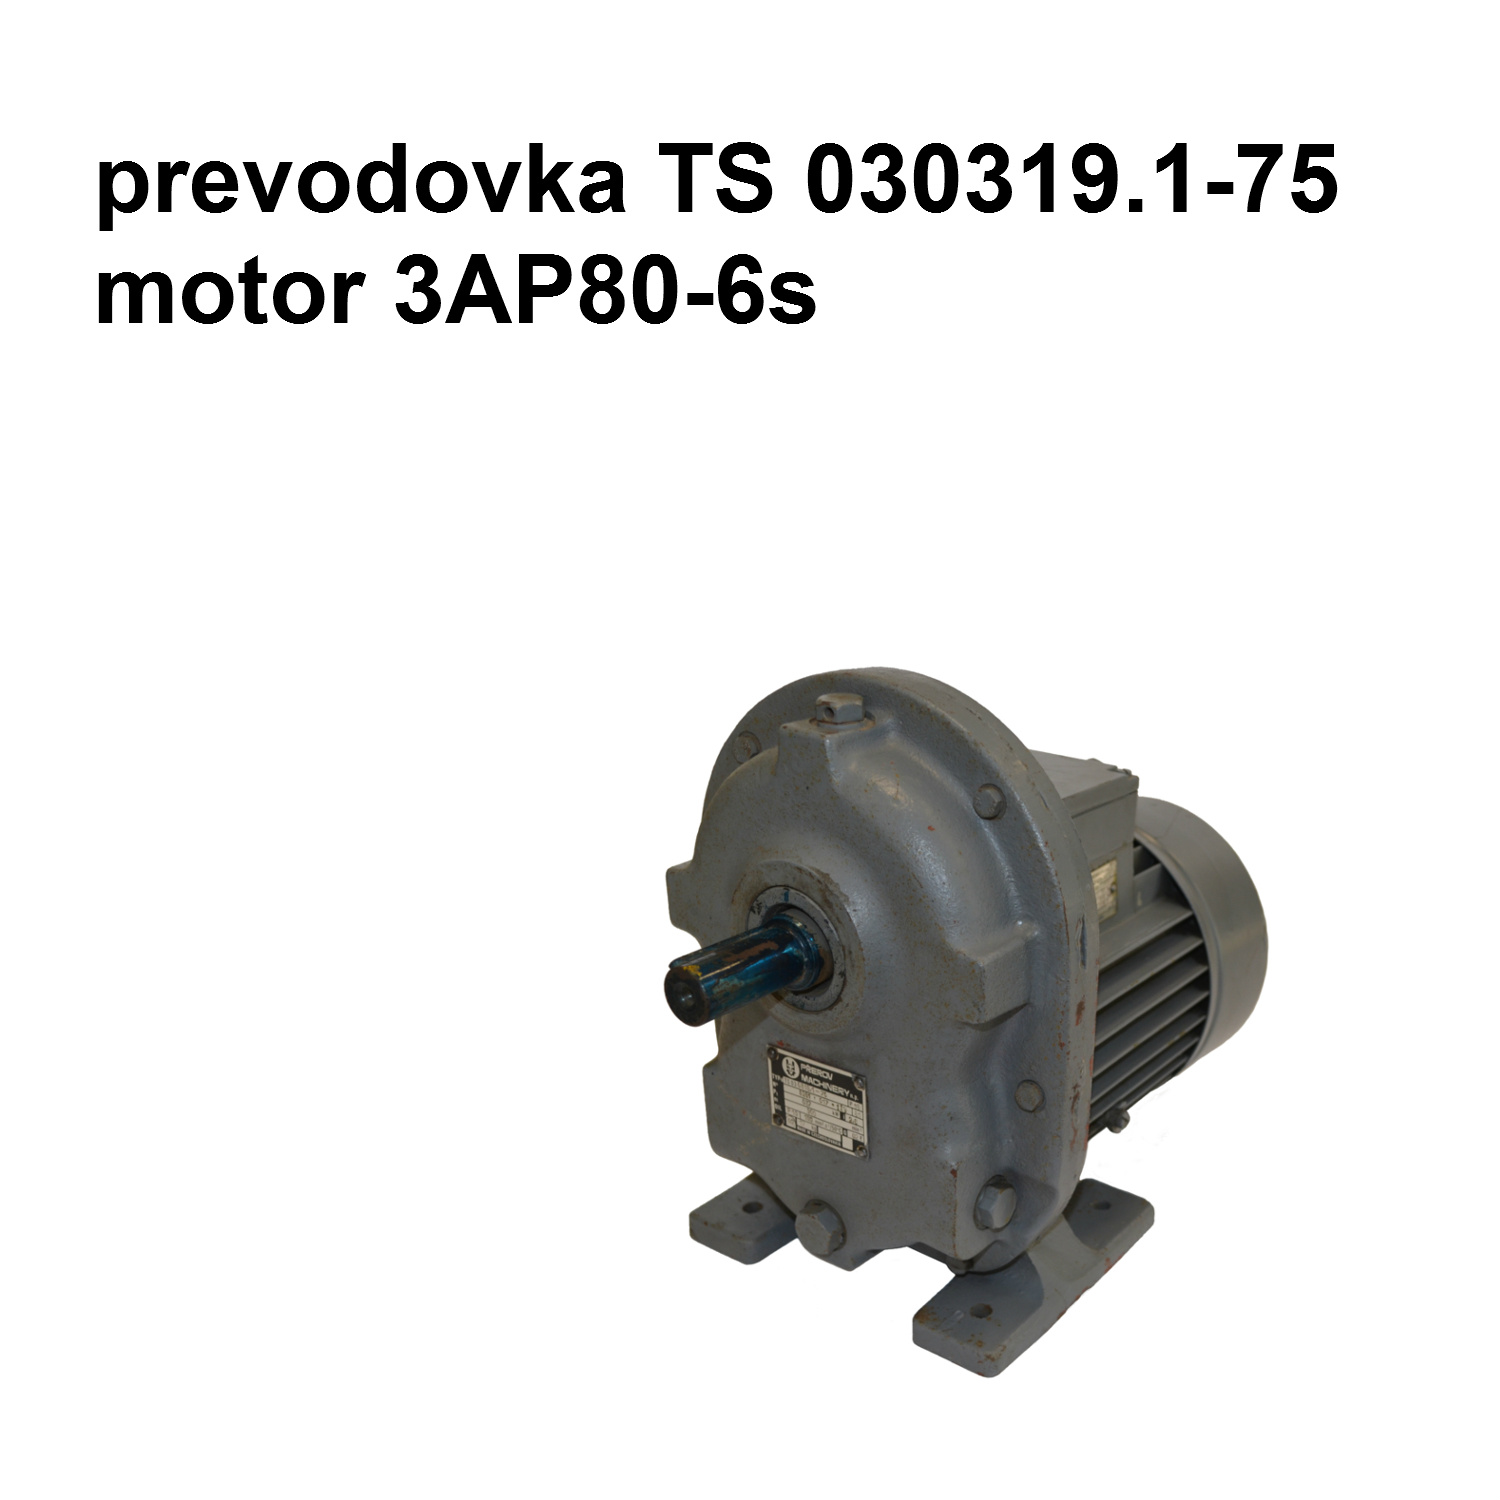 prevodovka TS 030319.1-75, P1 0,37 kW, n1 900/min, i 2,8  motor 3AP80-6s, 370W, 910 ot/min